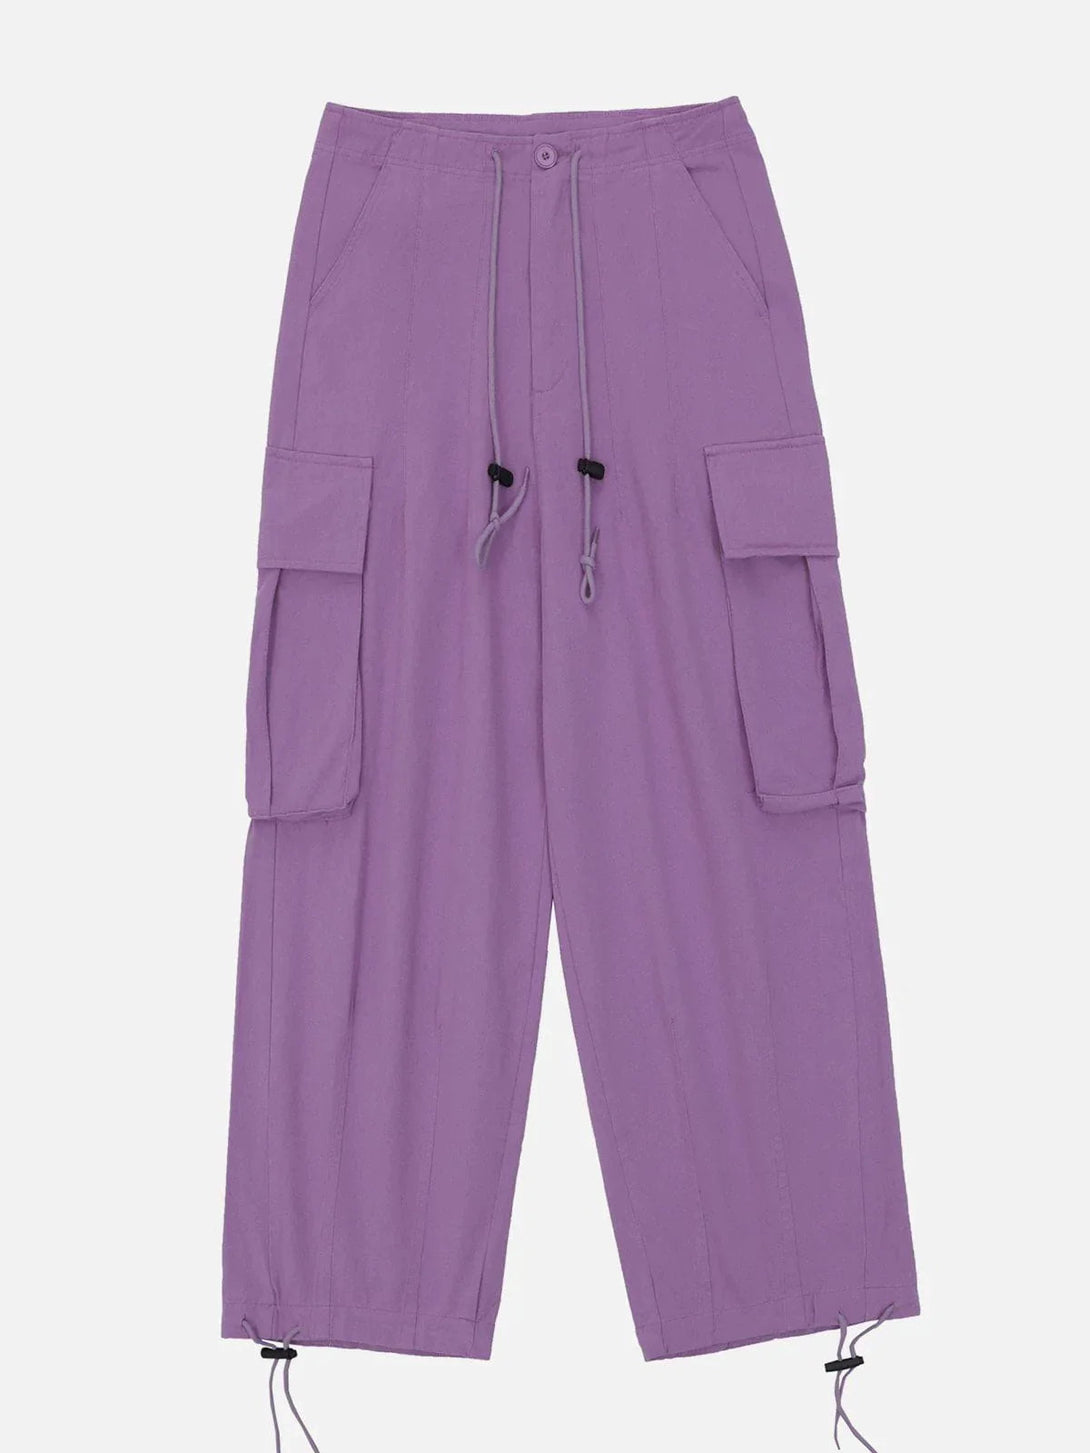 Majesda® - Side Pockets Pants outfit ideas streetwear fashion